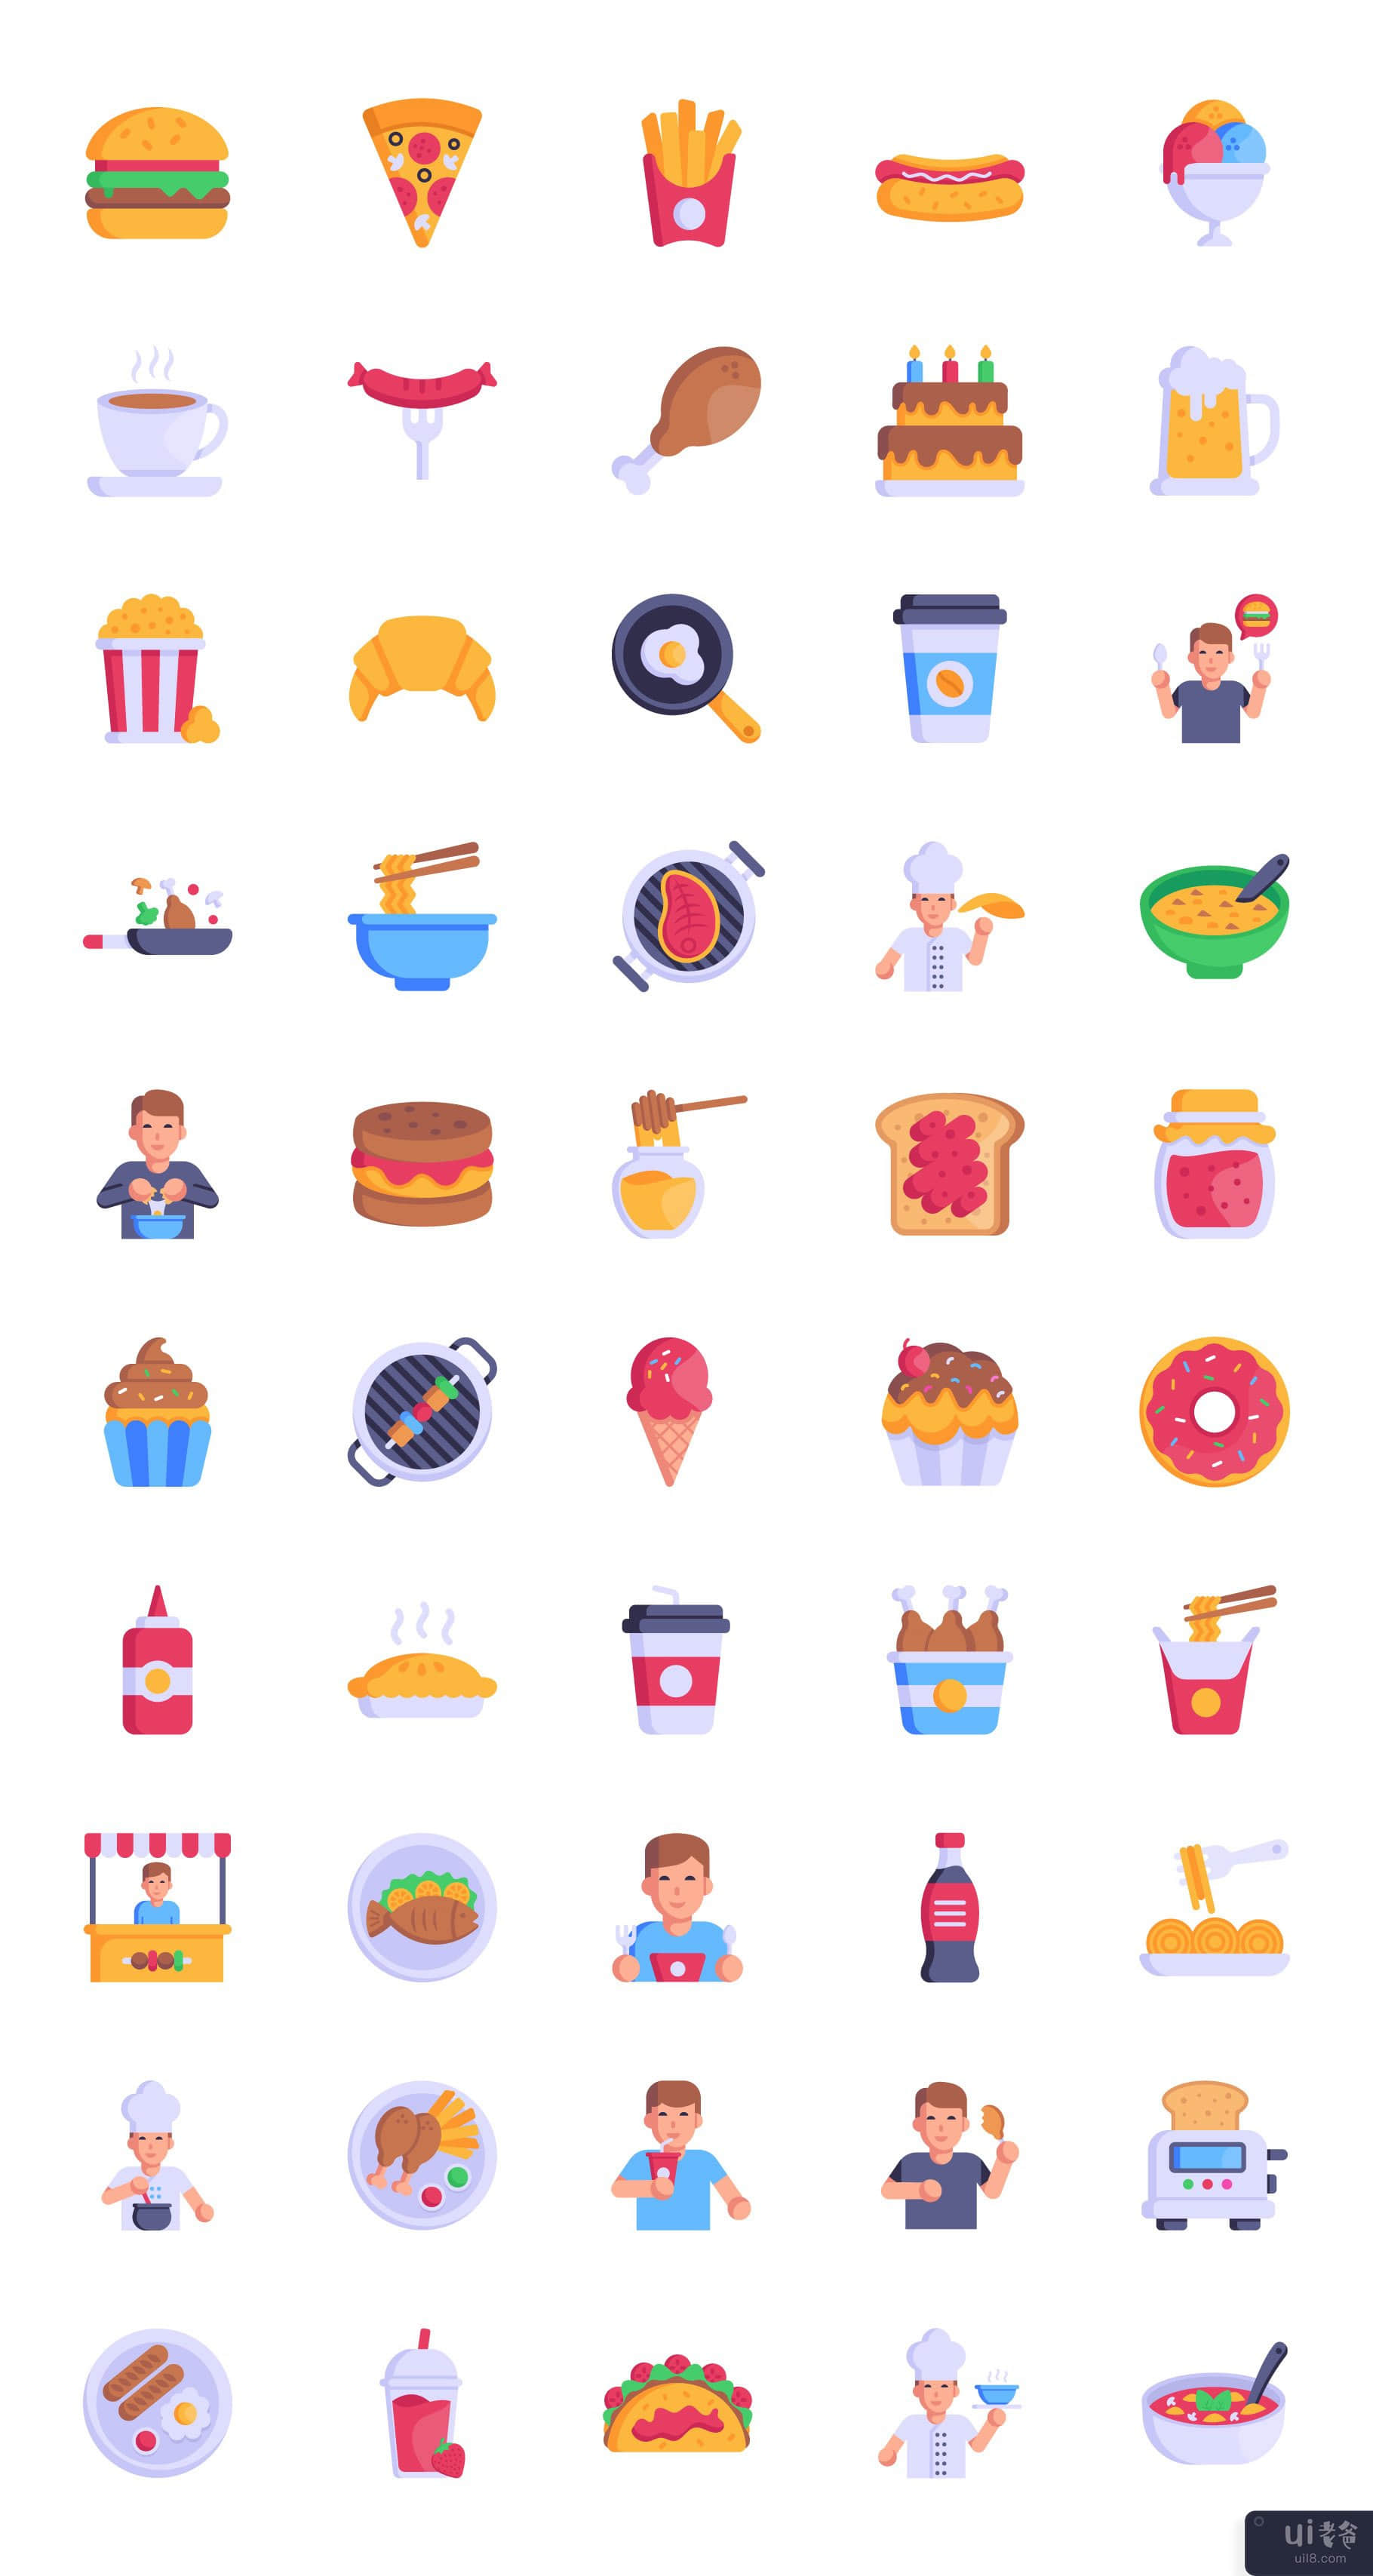 50 个快餐矢量图标(50 Fast Food vectors Icons)插图